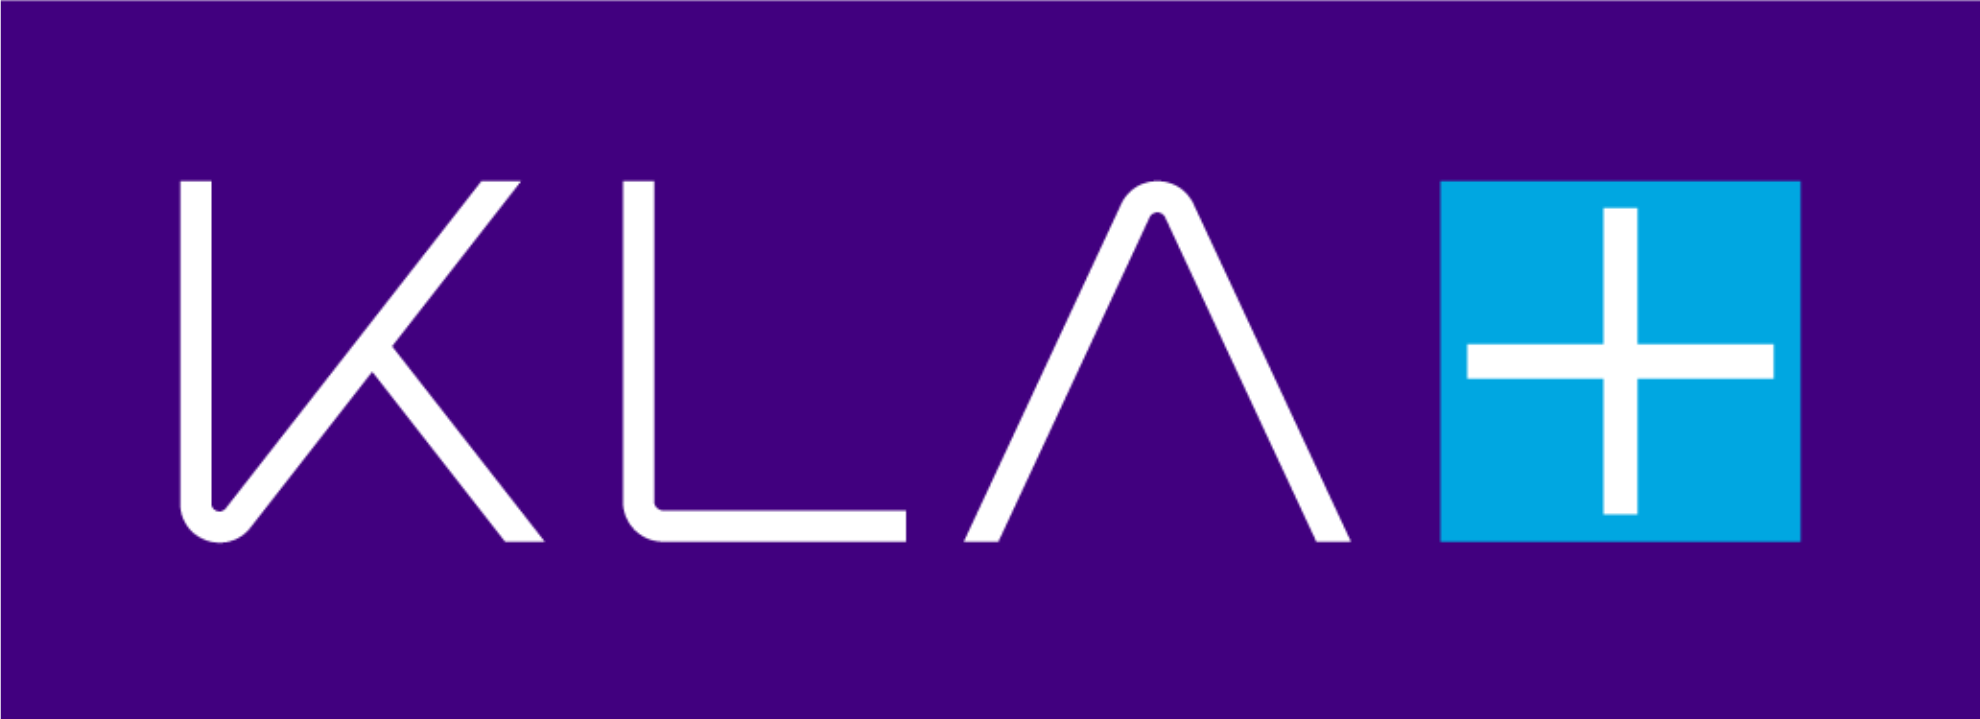 KLA - Platin Sponsor